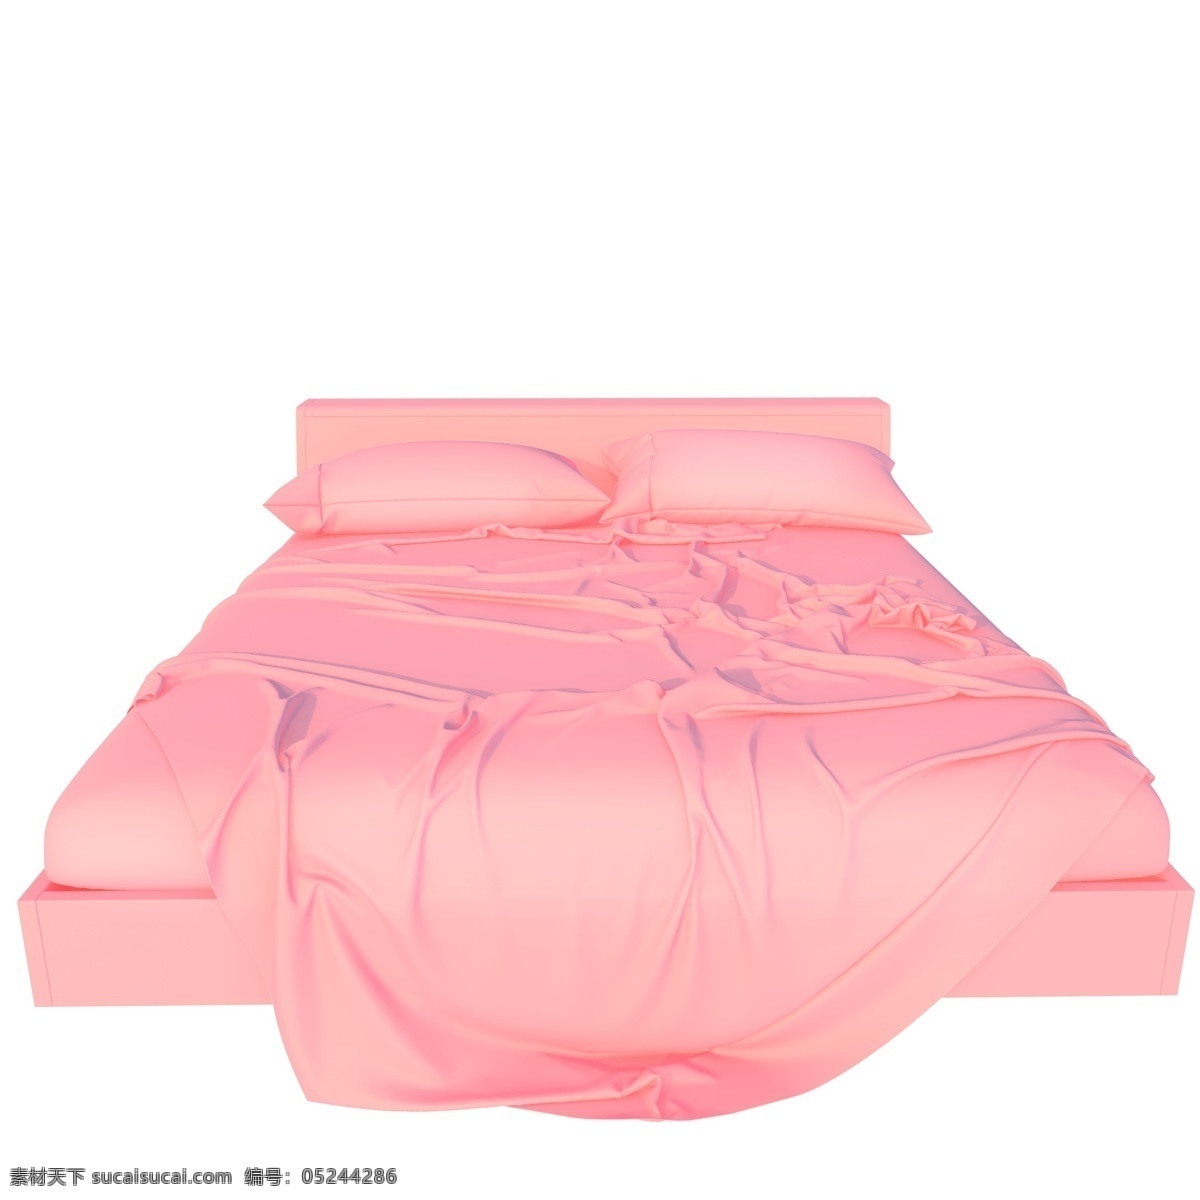 舒适家具 床 席梦思 软床 粉色